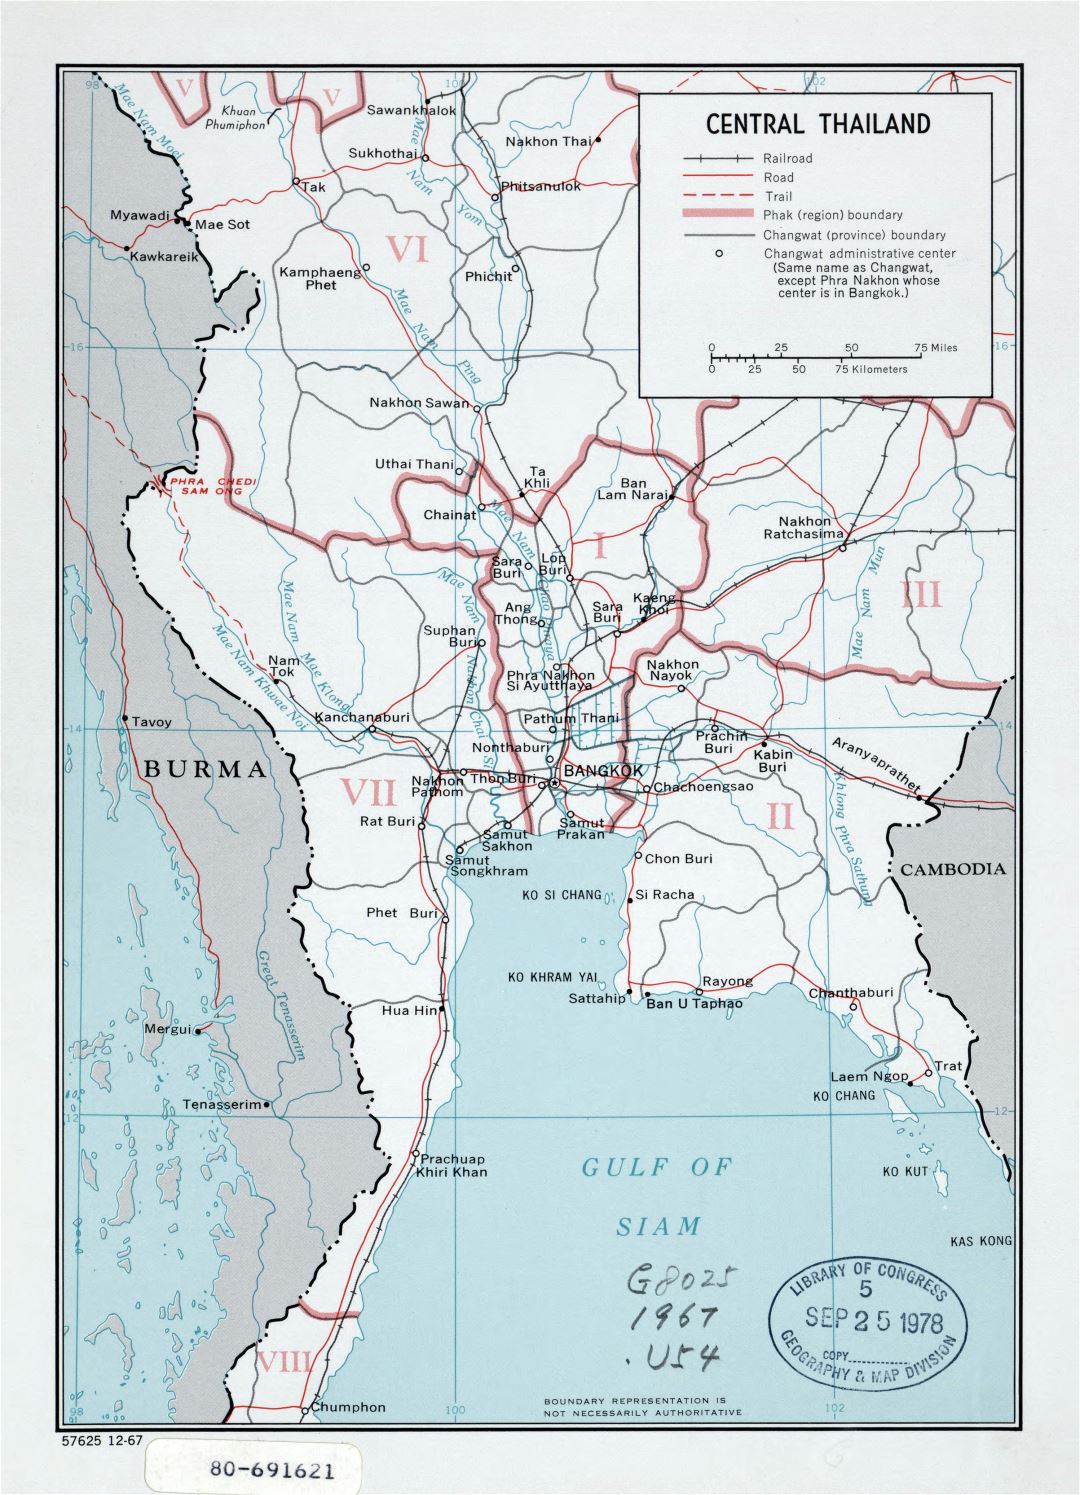 Grande detallado mapa político y administrativo del centro de Tailandia con carreteras, ferrocarriles y principales ciudades - 1967